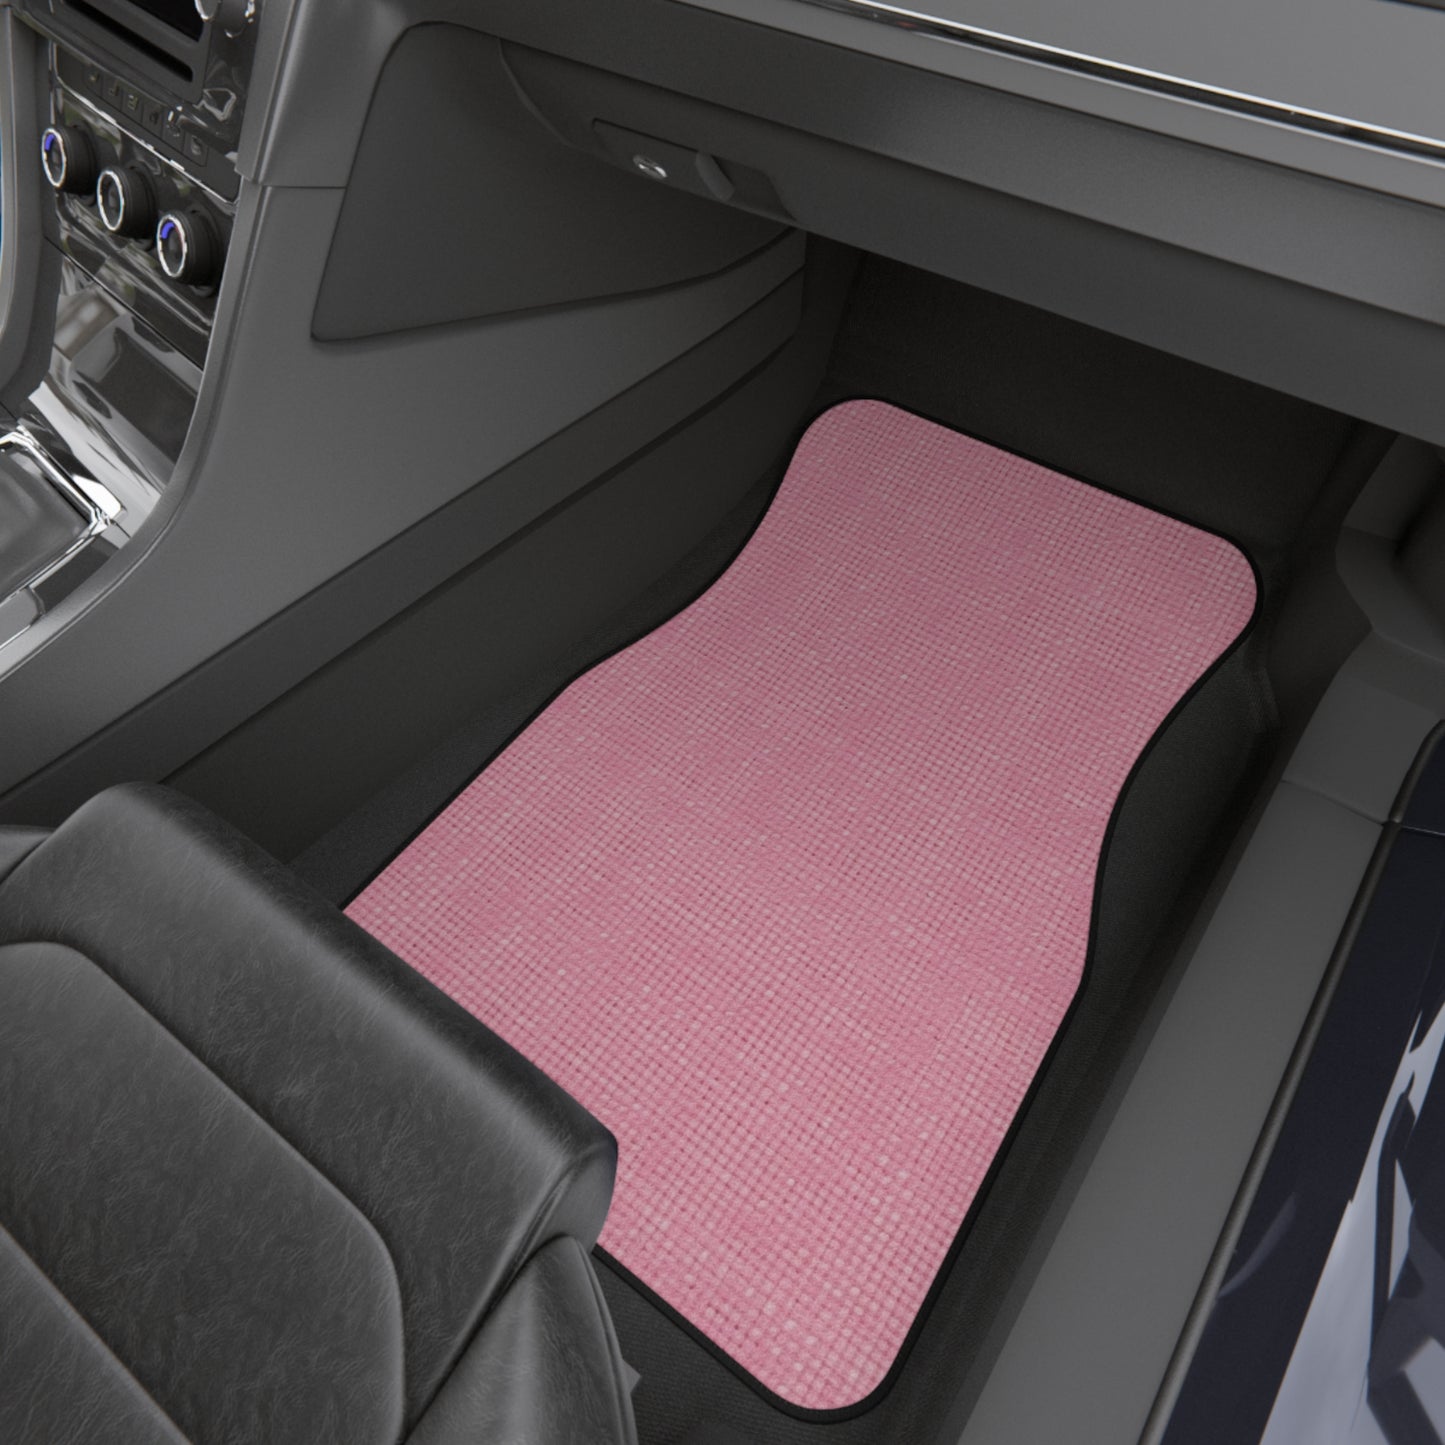 Pastel Rose Pink: Denim-Inspired, Refreshing Fabric Design - Car Mats (Set of 4)